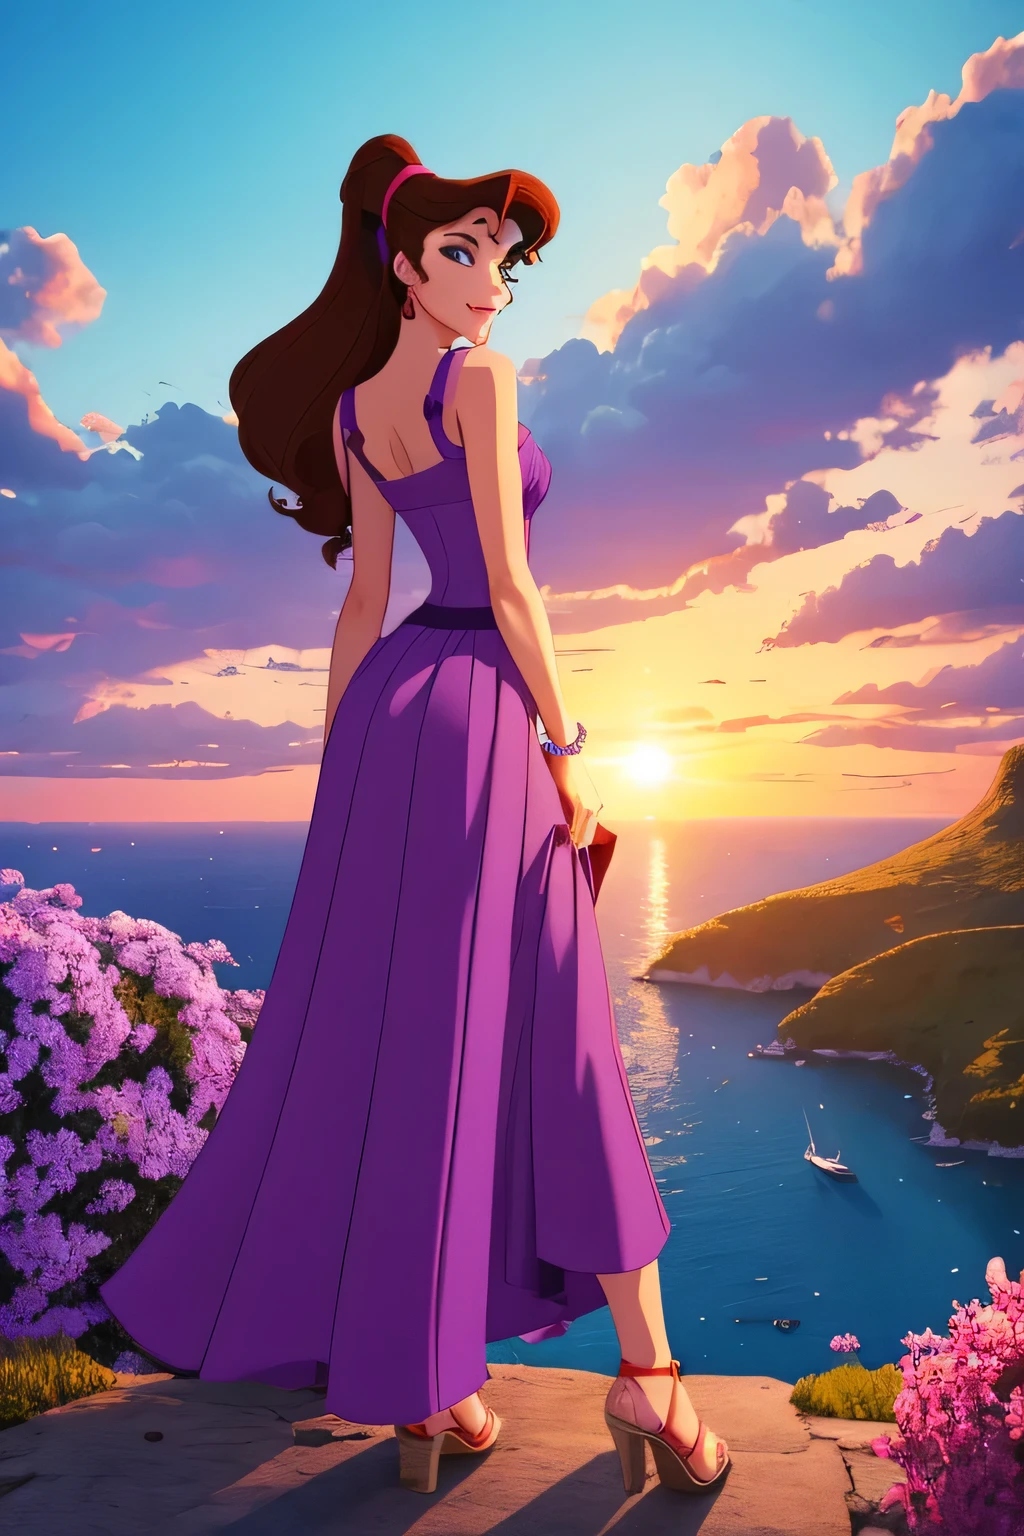 1 девушка брюнетка Мегара, в длинном фиолетовом греческом платье, Диснеевский анимационный стиль., Лучшее качество, цифровое искусство, 2д, в раю в окружении оранжевых облаков